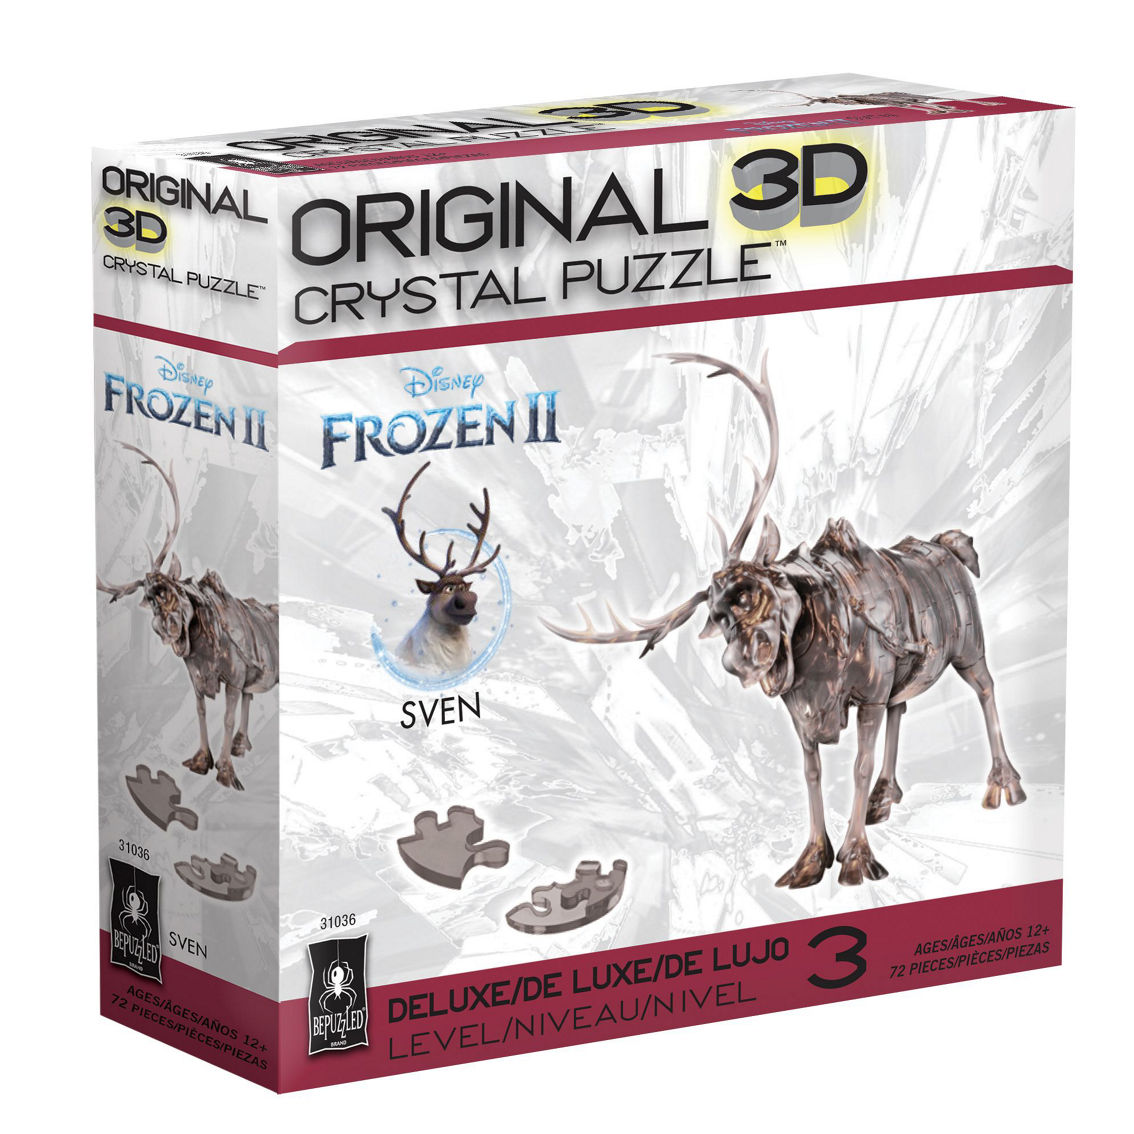 BePuzzled 3D Crystal Puzzle - Disney Frozen II - Sven the Reindeer: 72 Pcs - Image 2 of 2